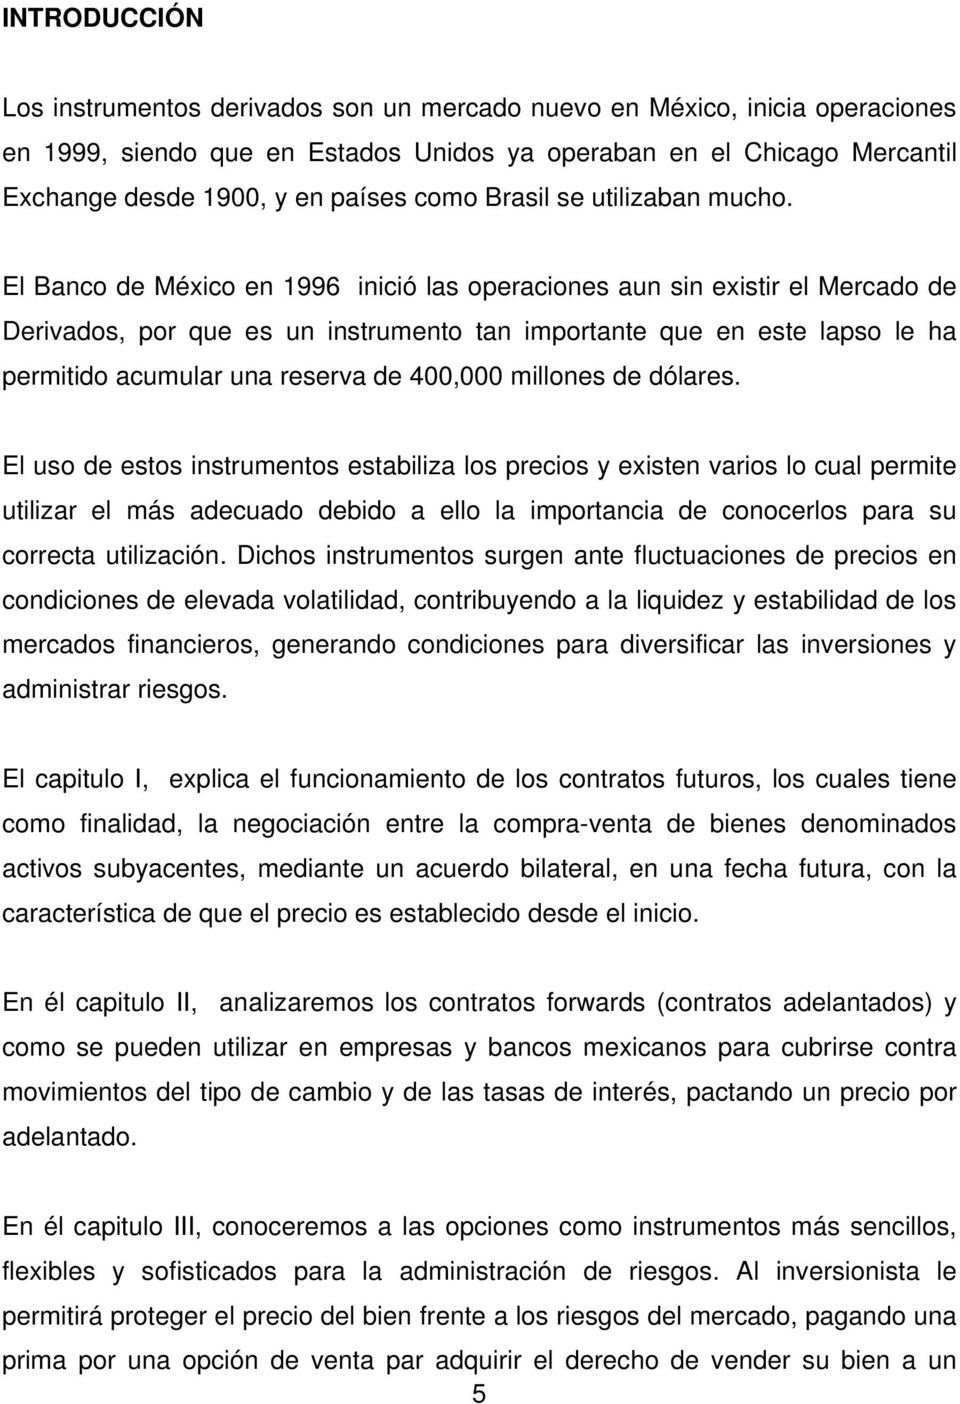 El Banco de México en 1996 inició las operaciones aun sin existir el Mercado de Derivados, por que es un instrumento tan importante que en este lapso le ha permitido acumular una reserva de 400,000